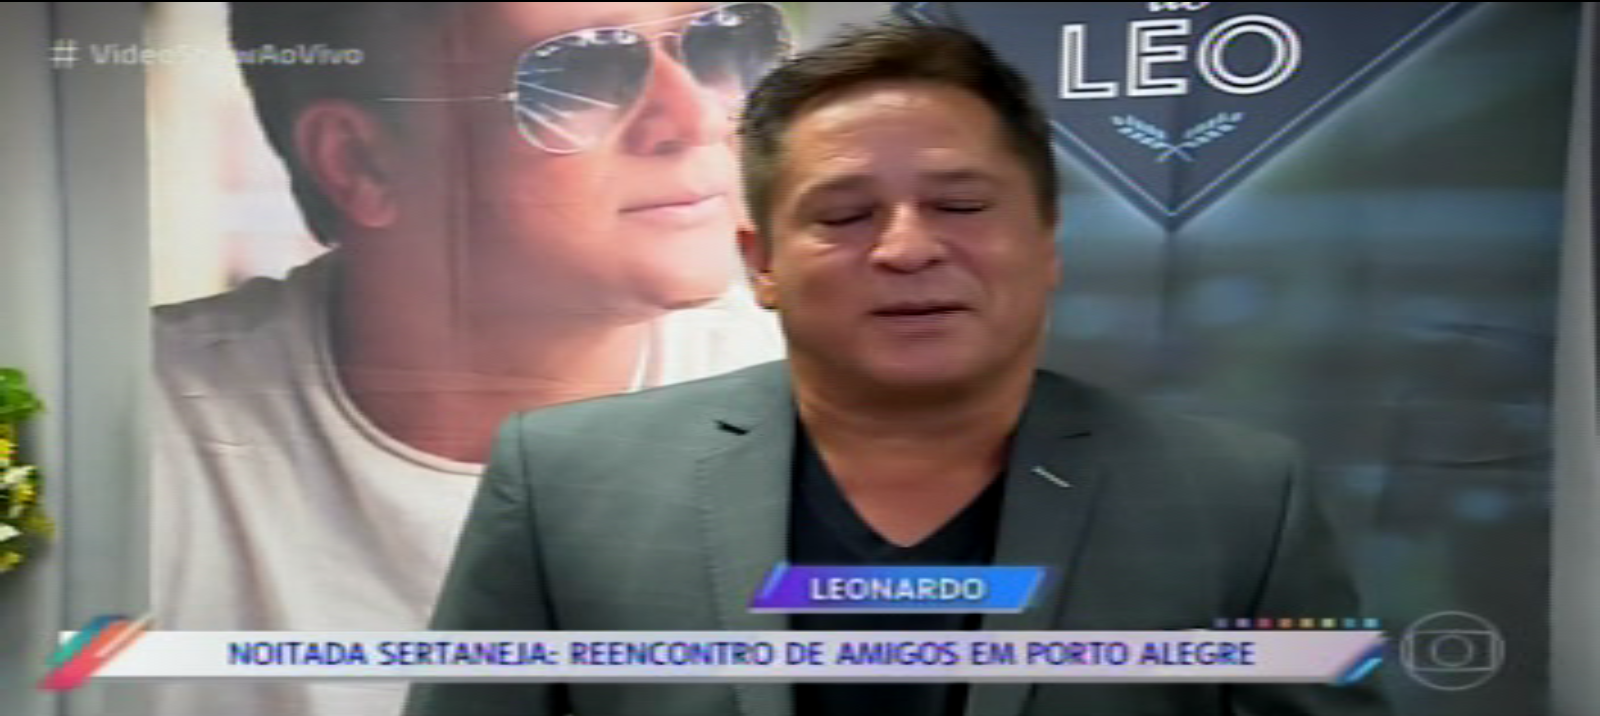 MATÉRIA do Leonardo e amigos programa vídeo show em Porto Alegre 23 4 2018